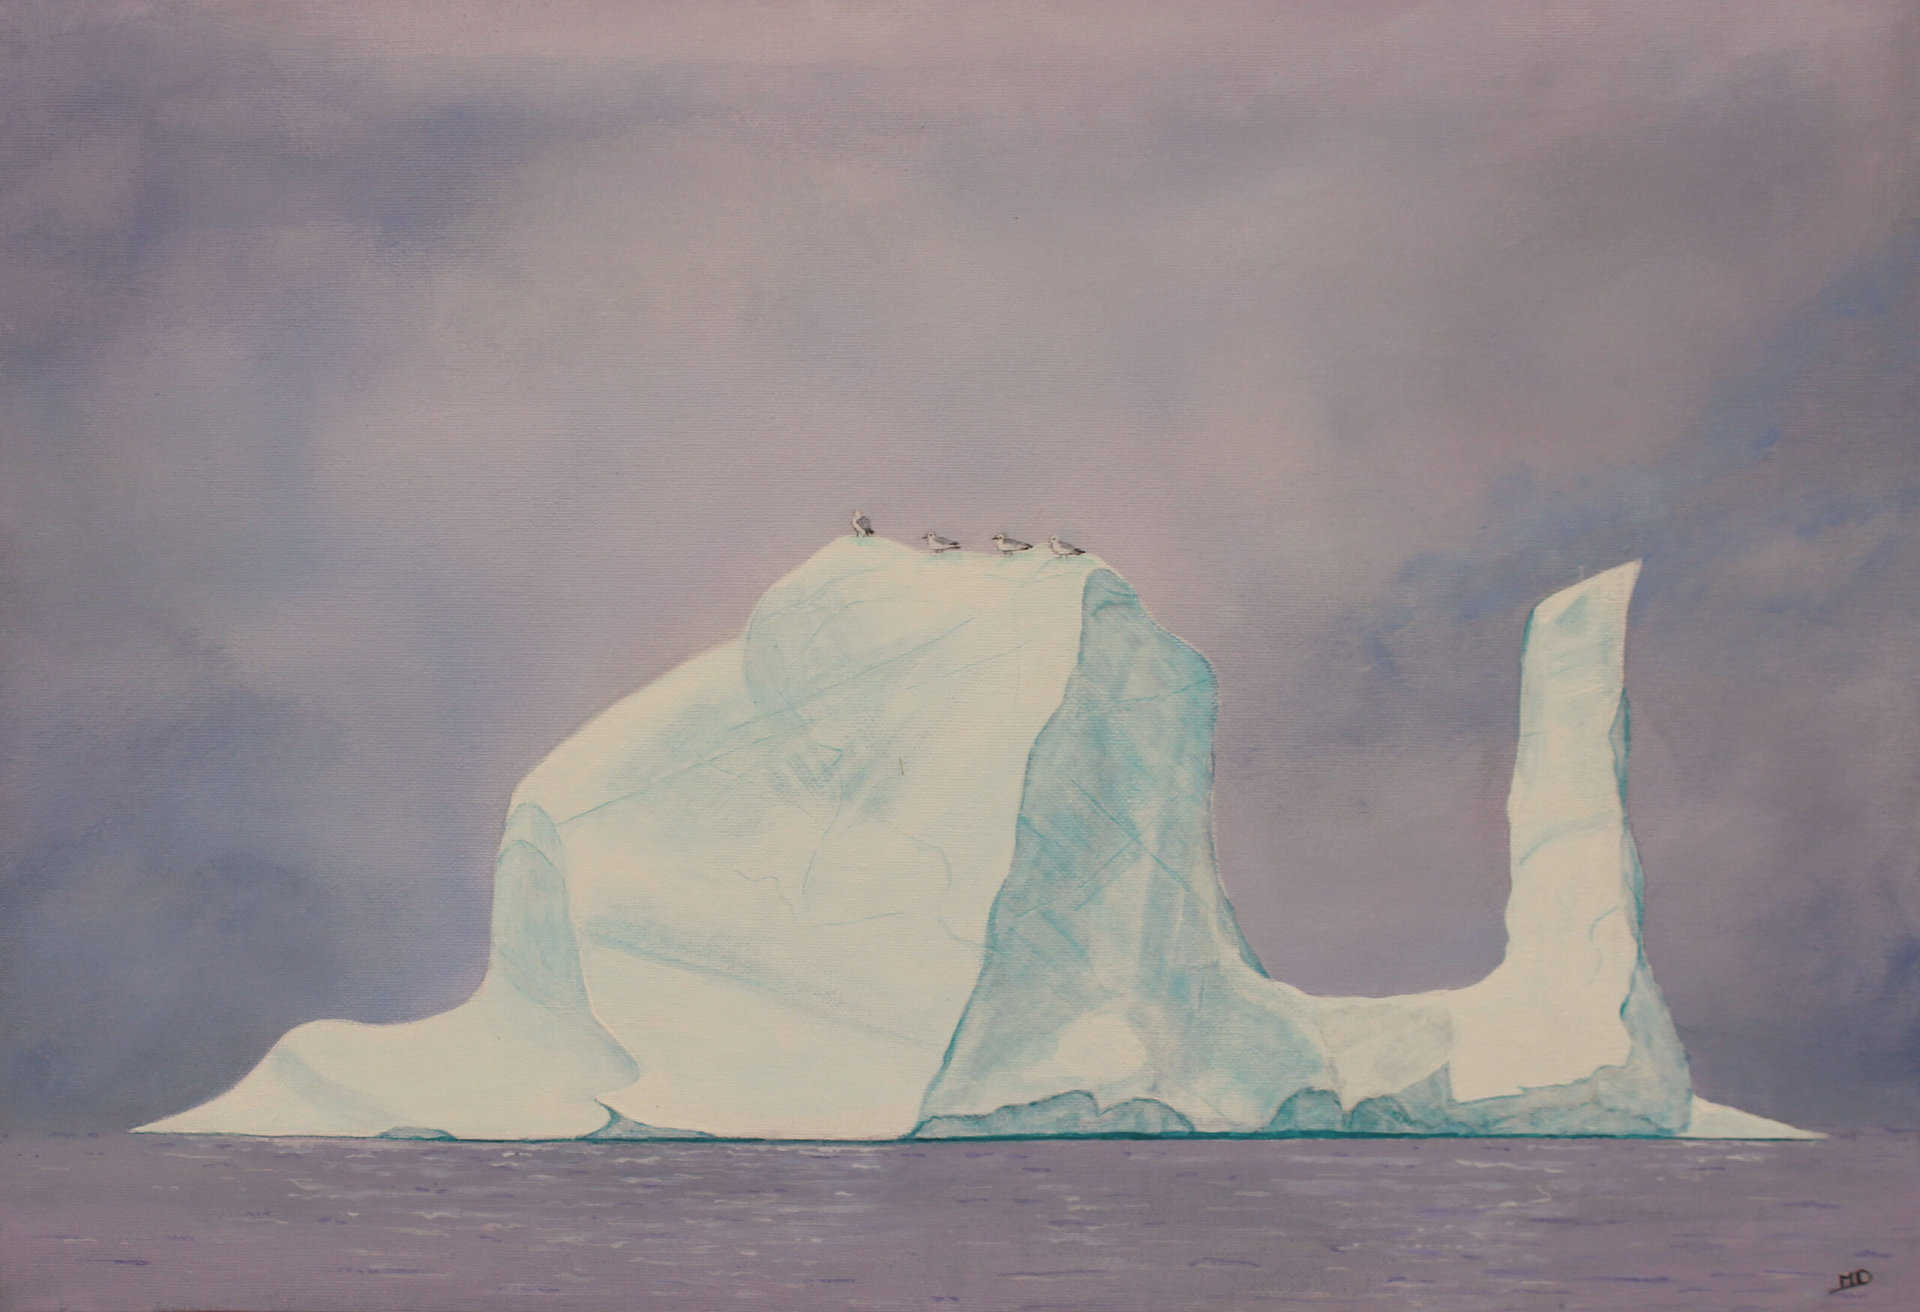 œuvre d'art, marine, acrylique sur toile 55/38cm, david morel artiste, un gros iceberg avec quatre mouettes dessus